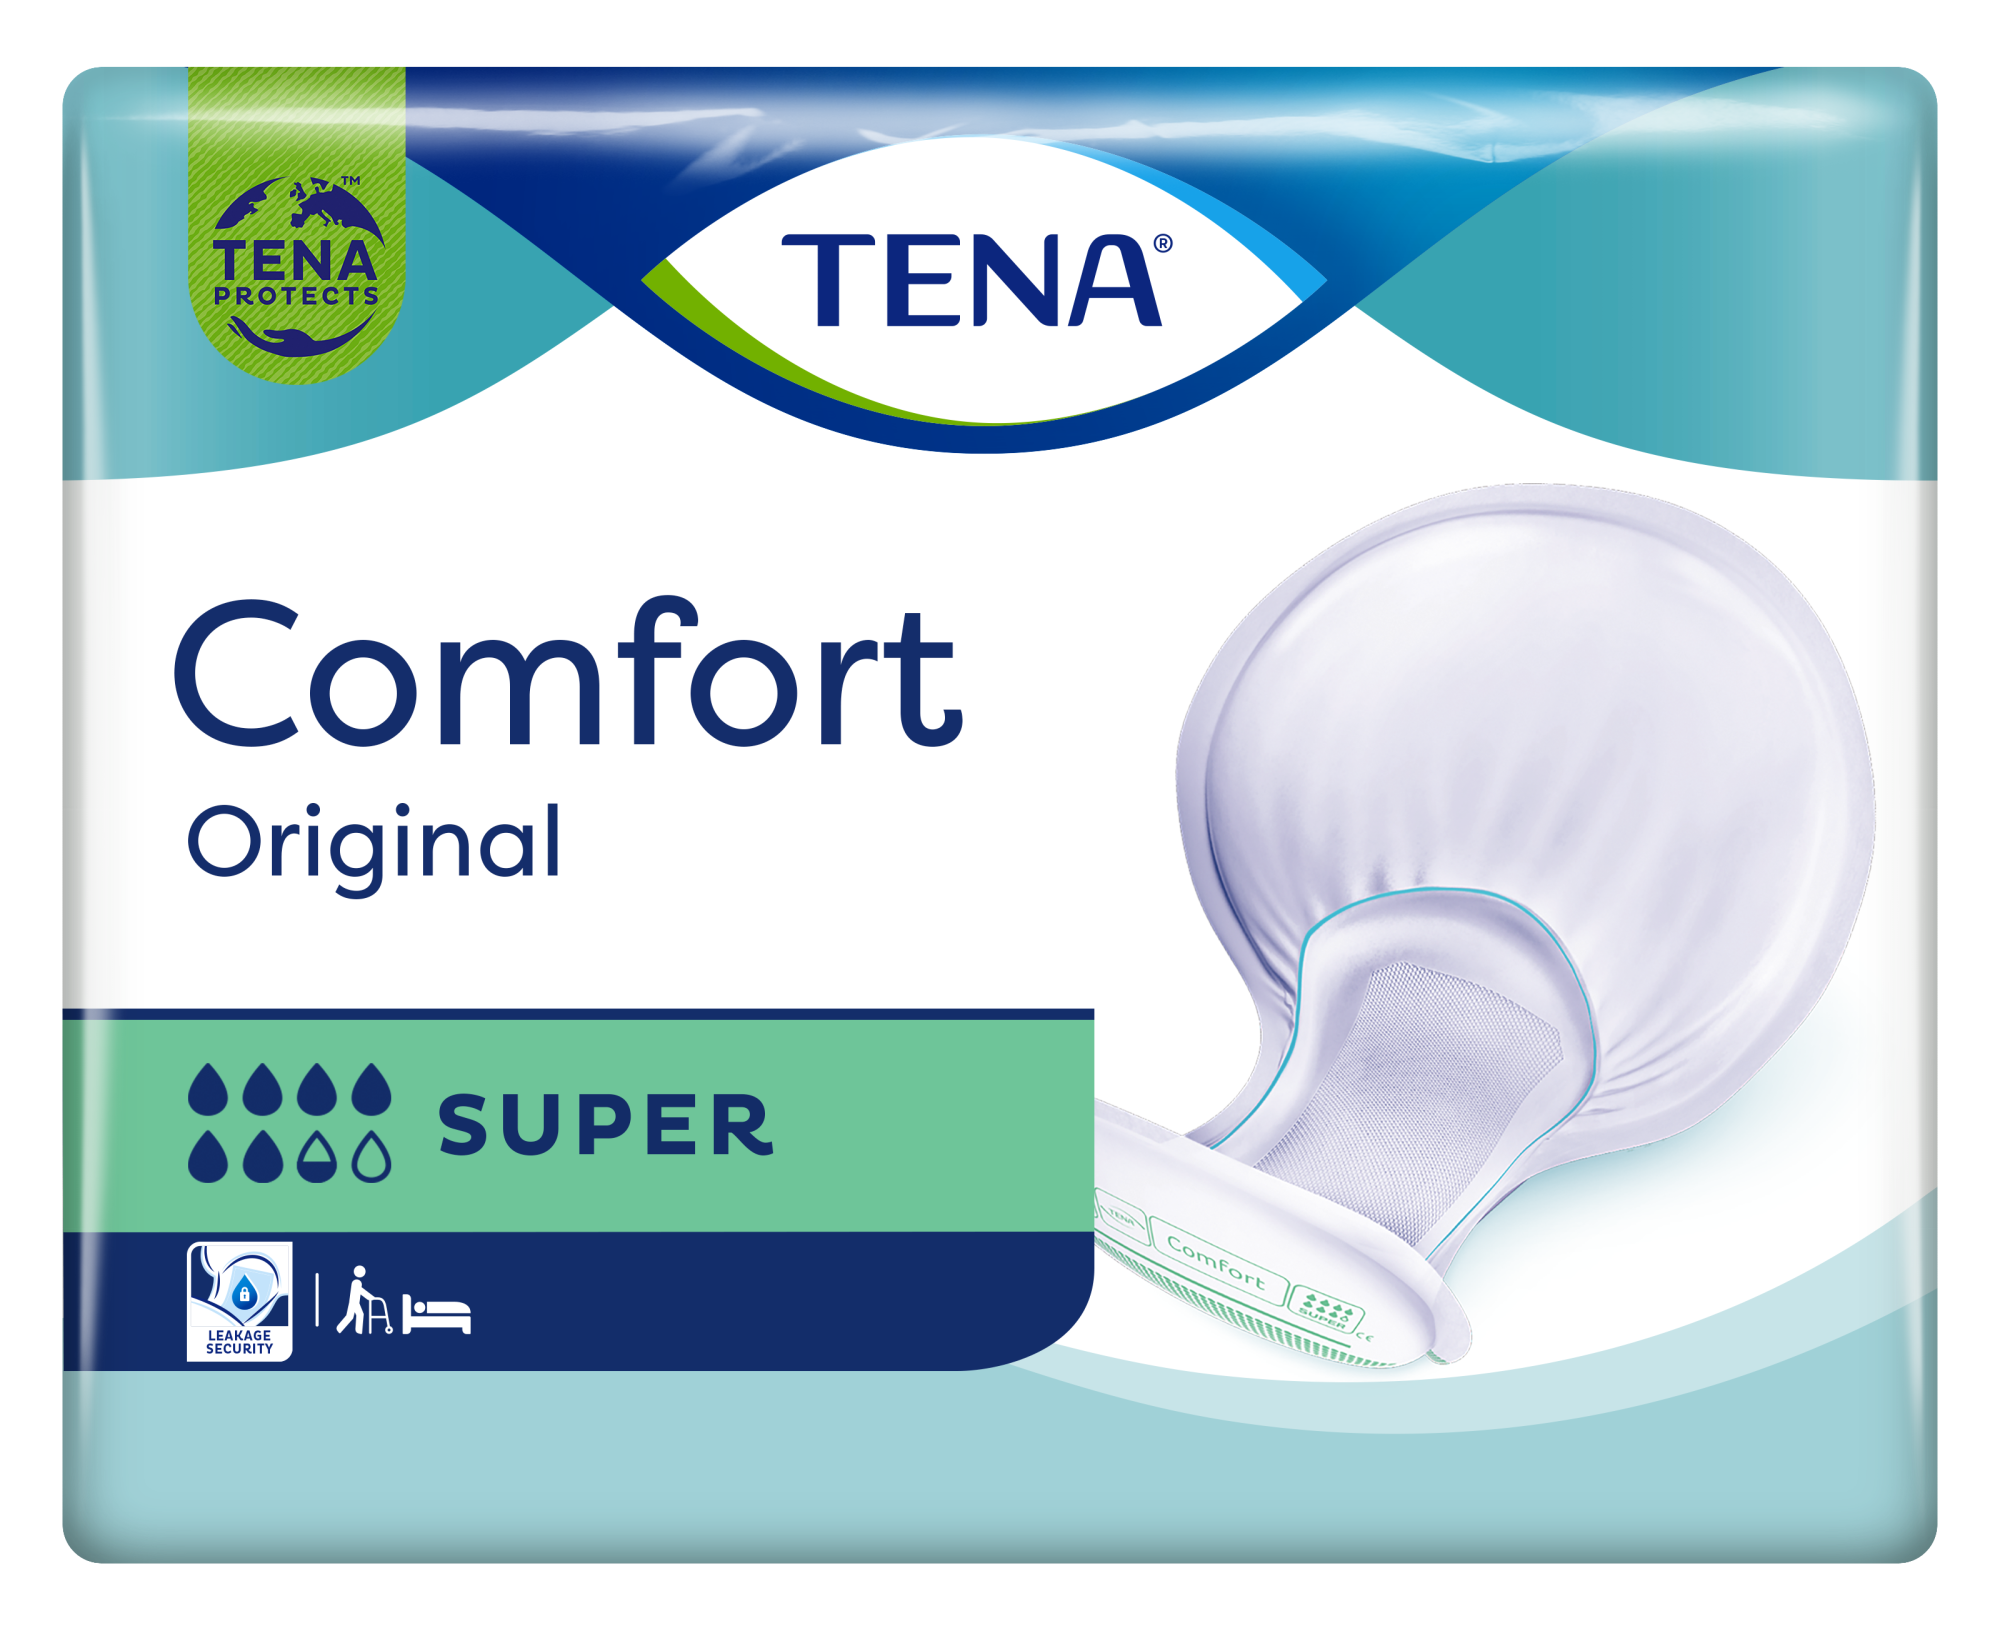 TENA Comfort Original Super